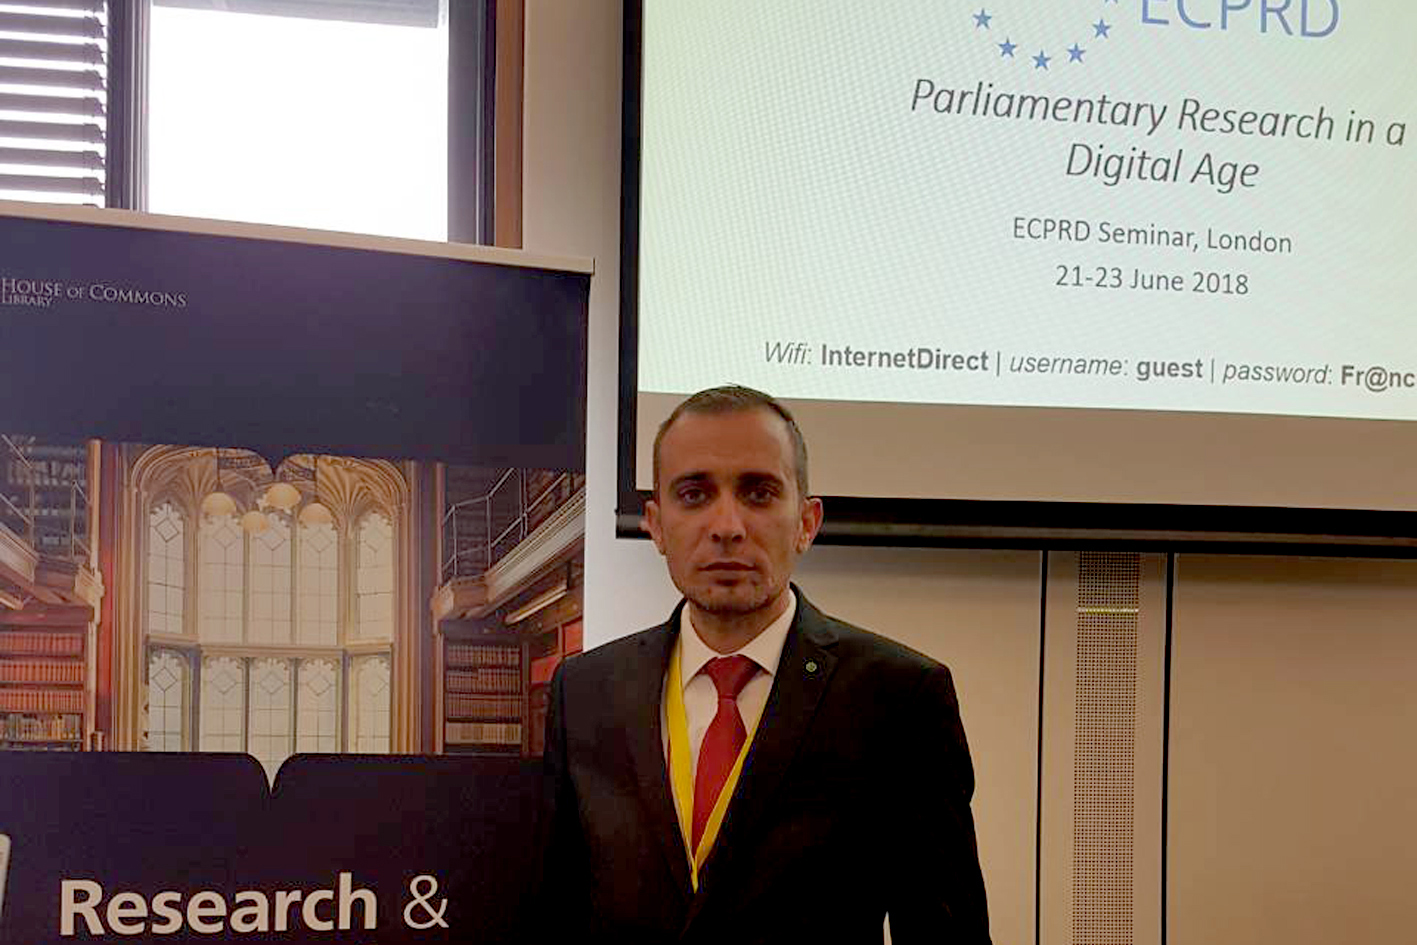 Секретар Заједничке службе Парламентарне скупштине БиХ Кенан Вехабовић учествује на ECPRD-овом семинару у Лондону